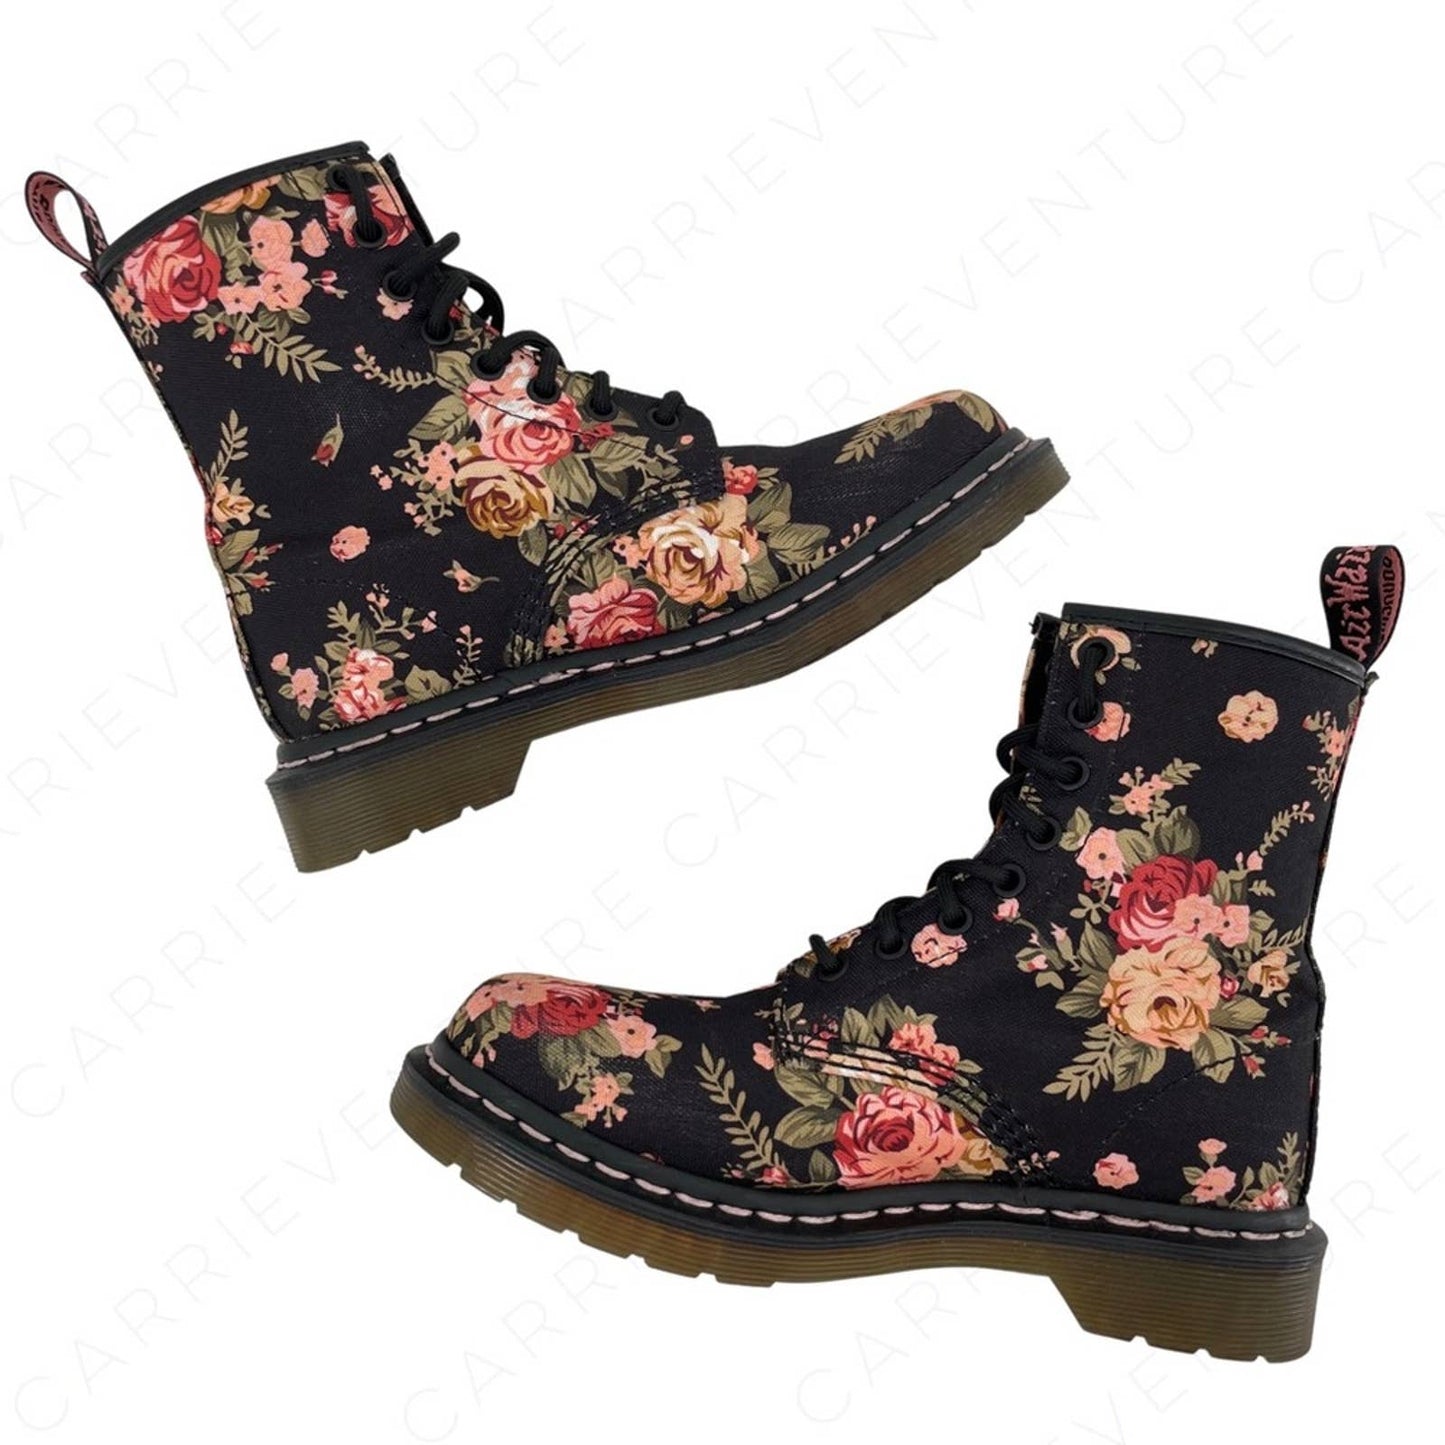 Dr. Martens 1460 Victorian Rose Antique Floral Black Canvas Combat Moto Boot Size 6